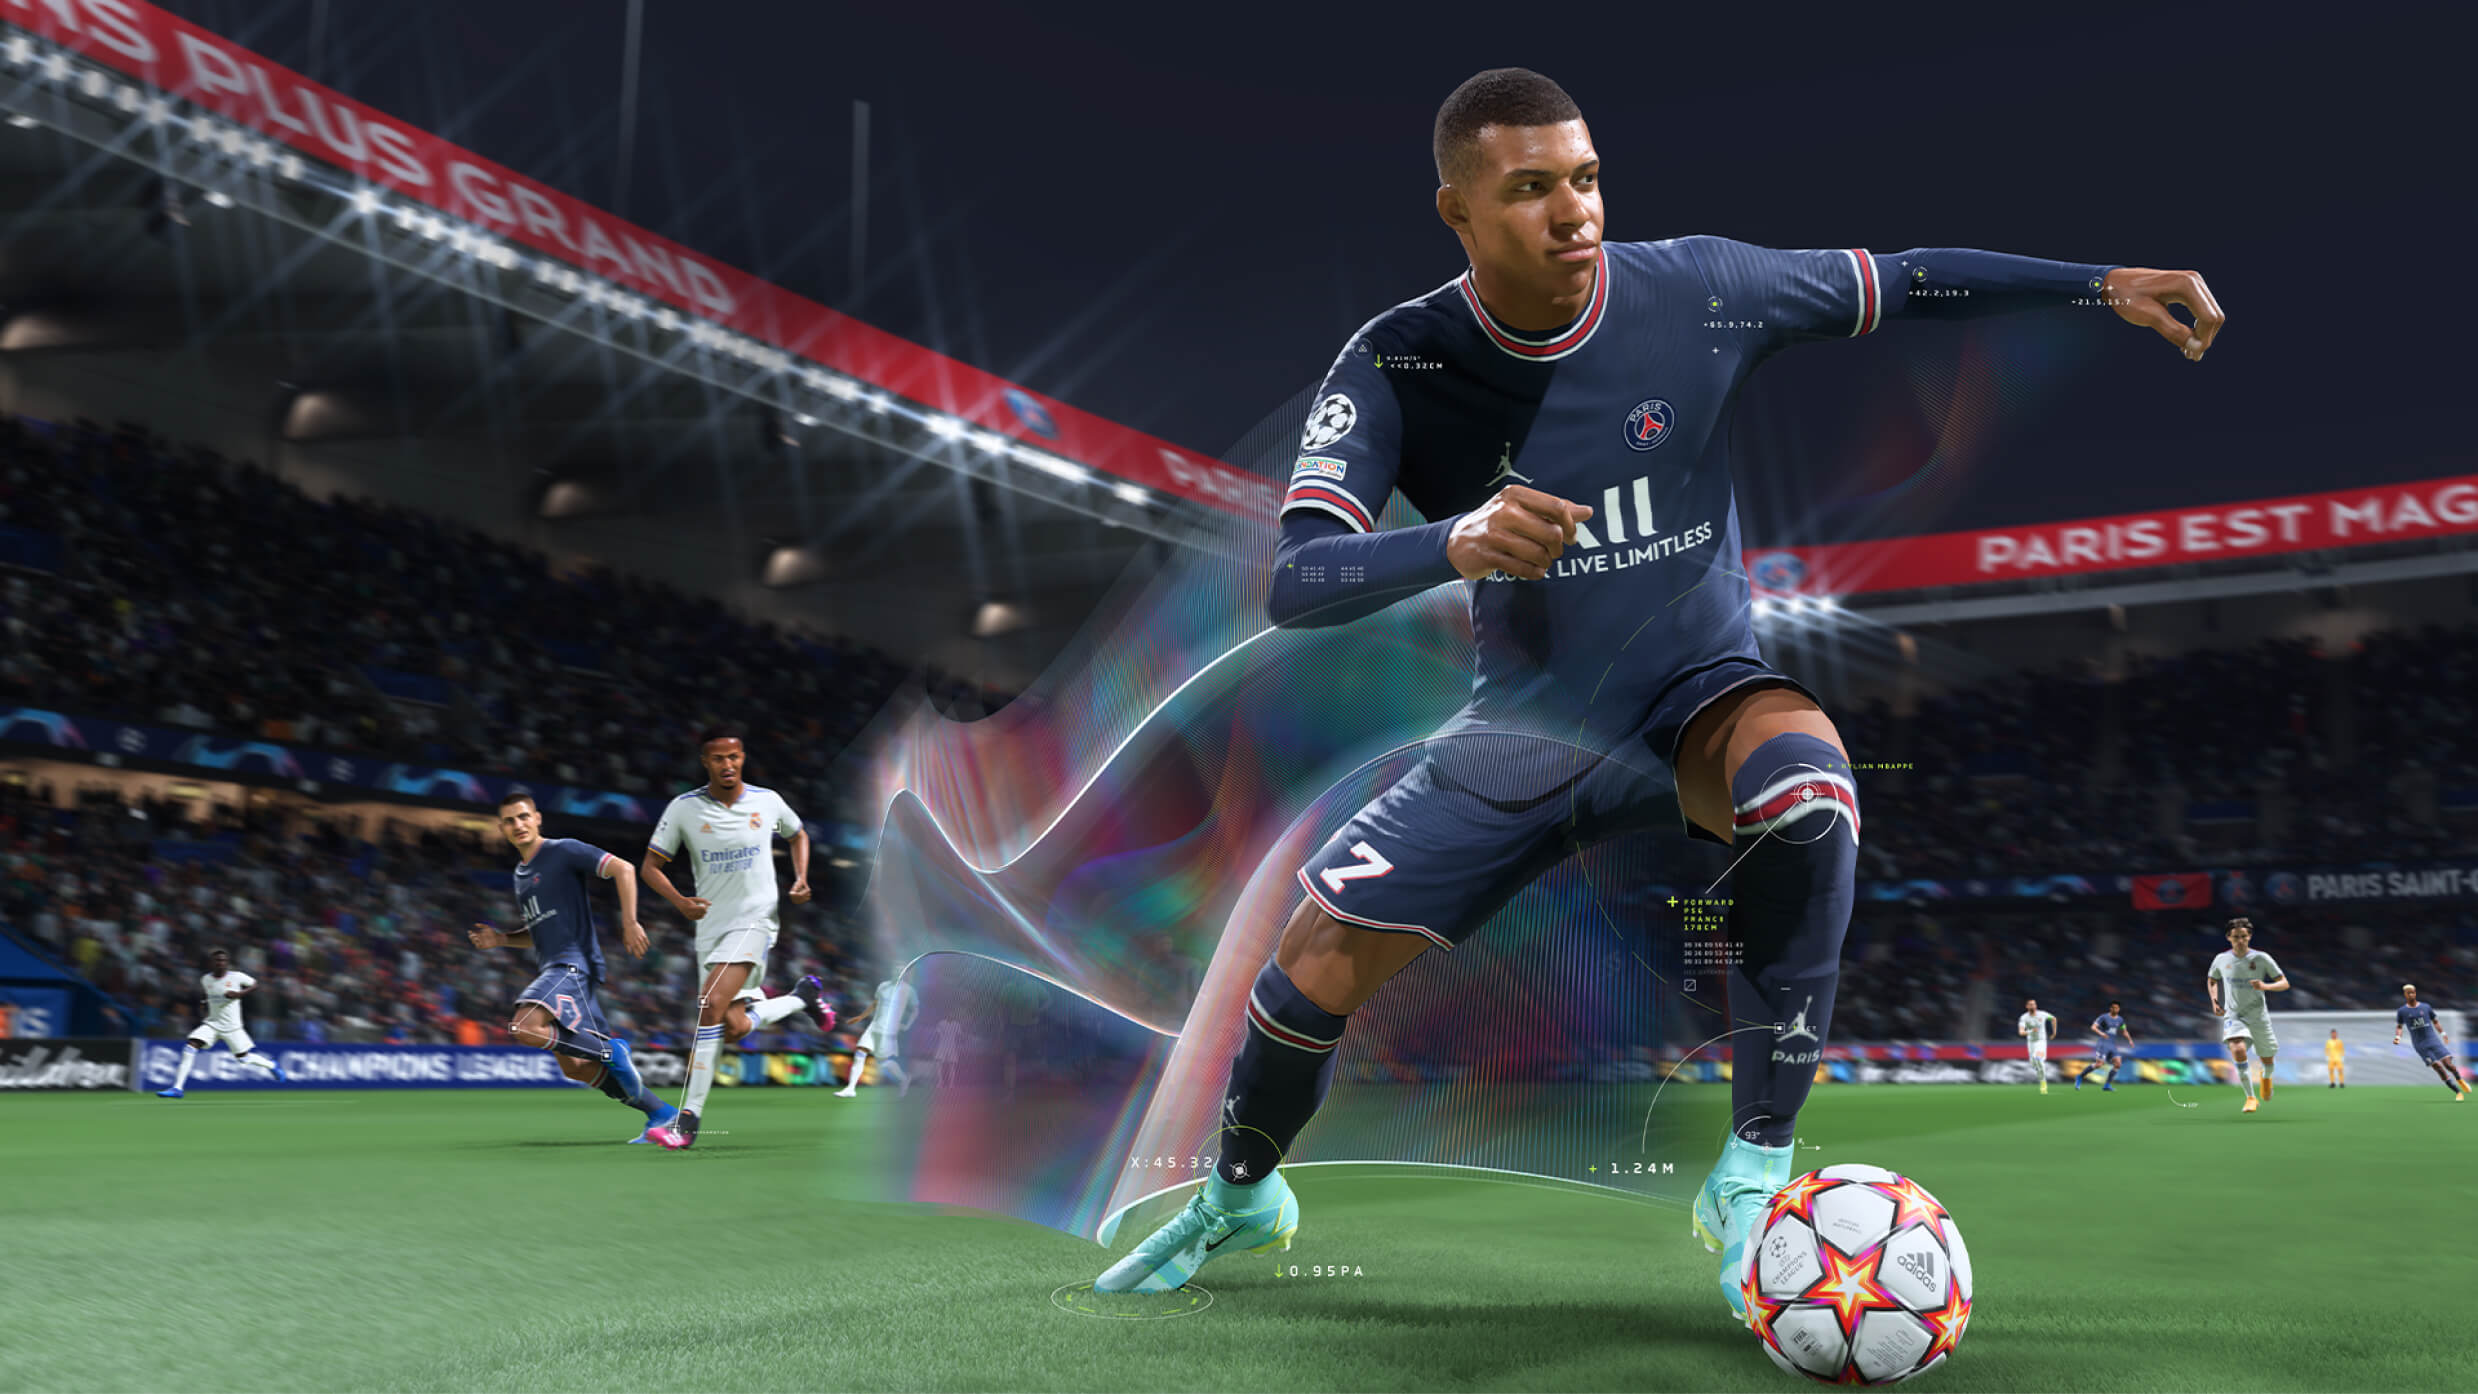 Rumor: 2K obtendrá la licencia FIFA para un nuevo juego este año